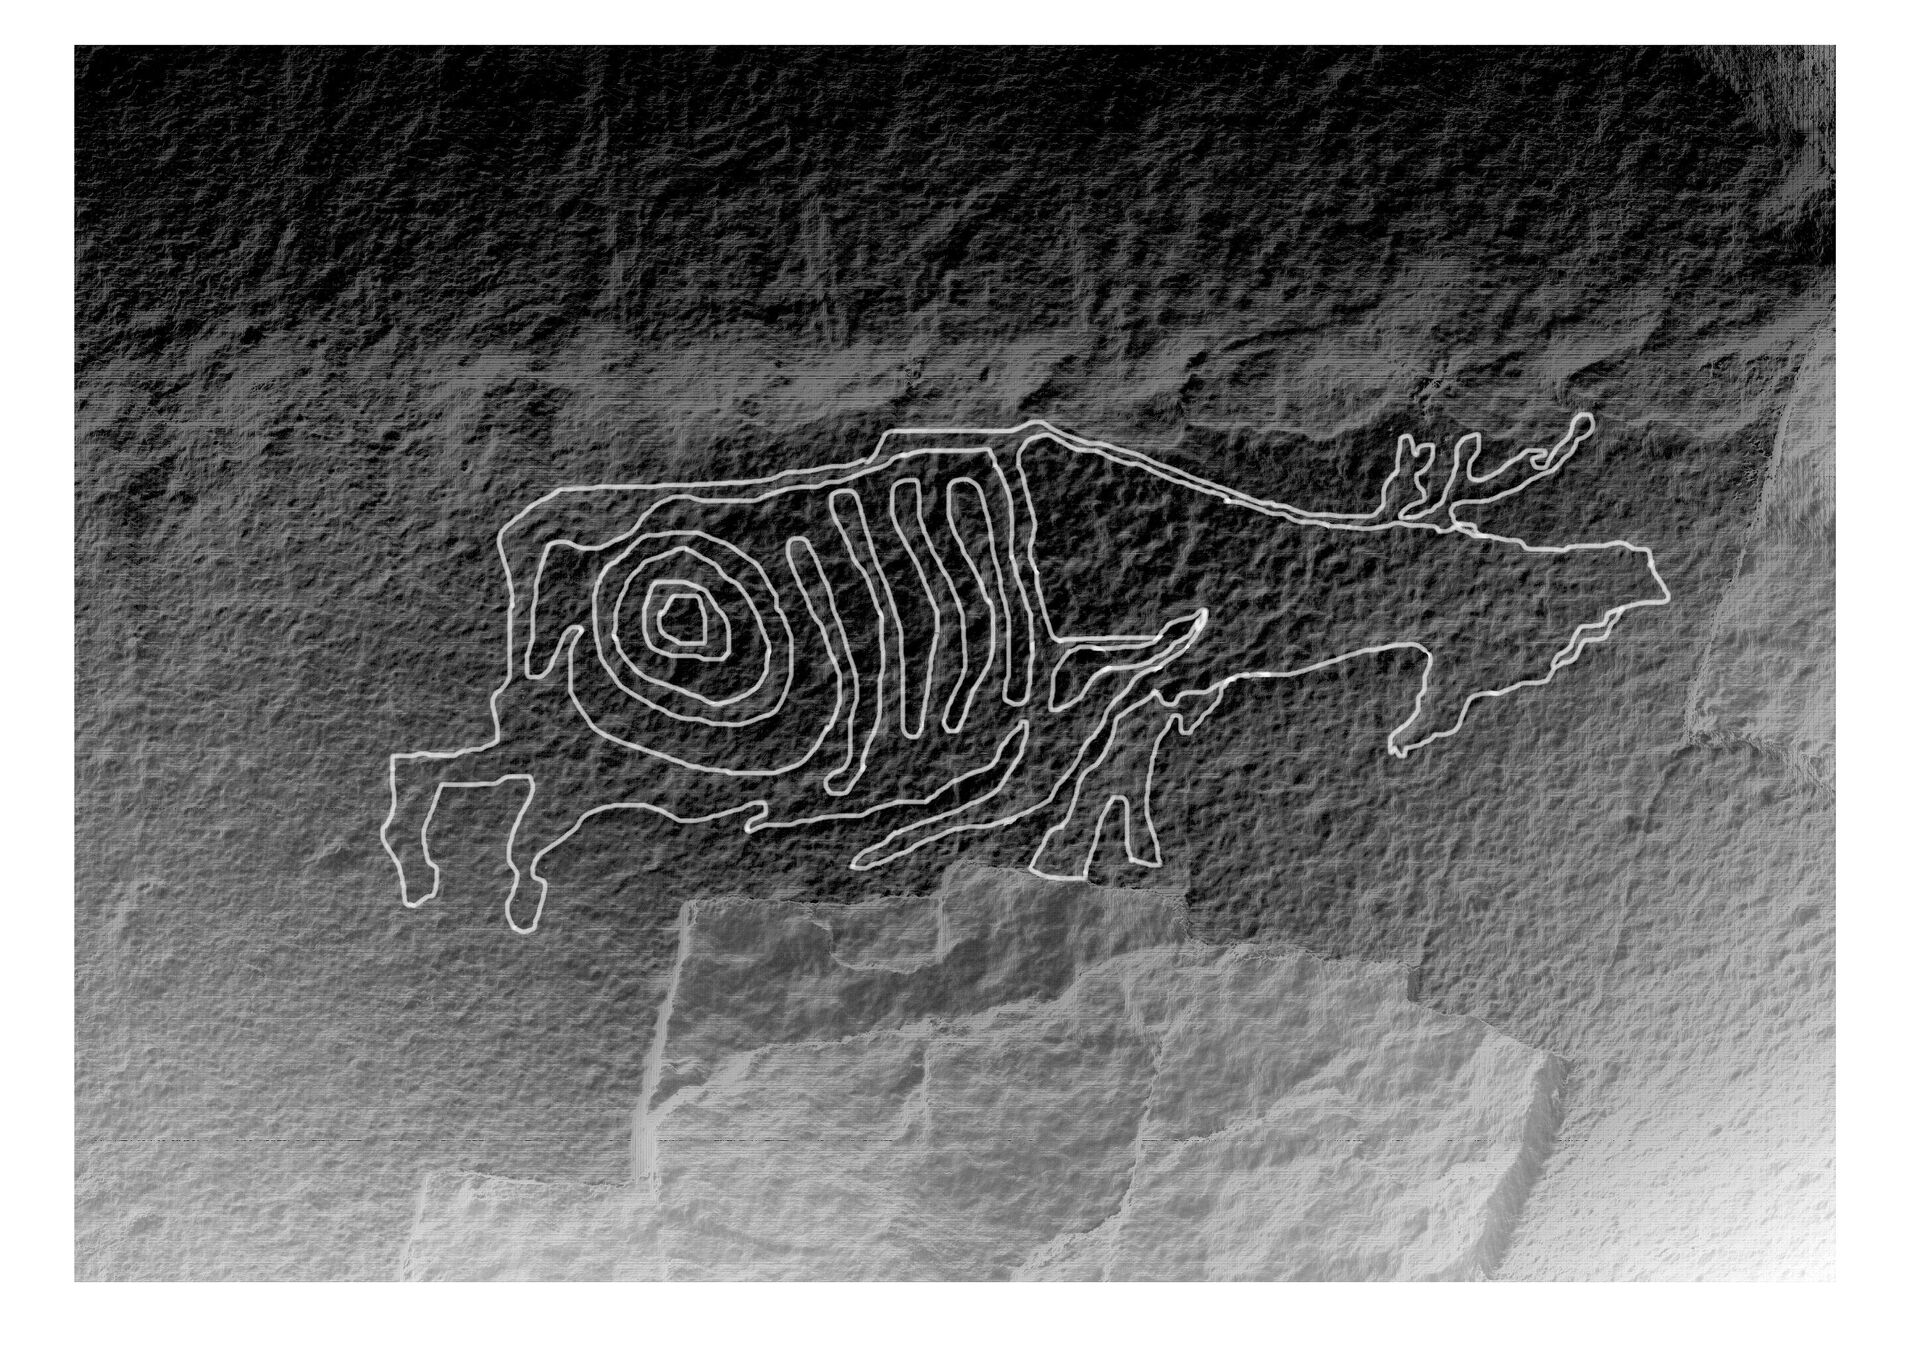 Изображение лося, выявленное в декабре 2020 среди петроглифов на реке Кия в Хабаровском крае - РИА Новости, 1920, 21.12.2020